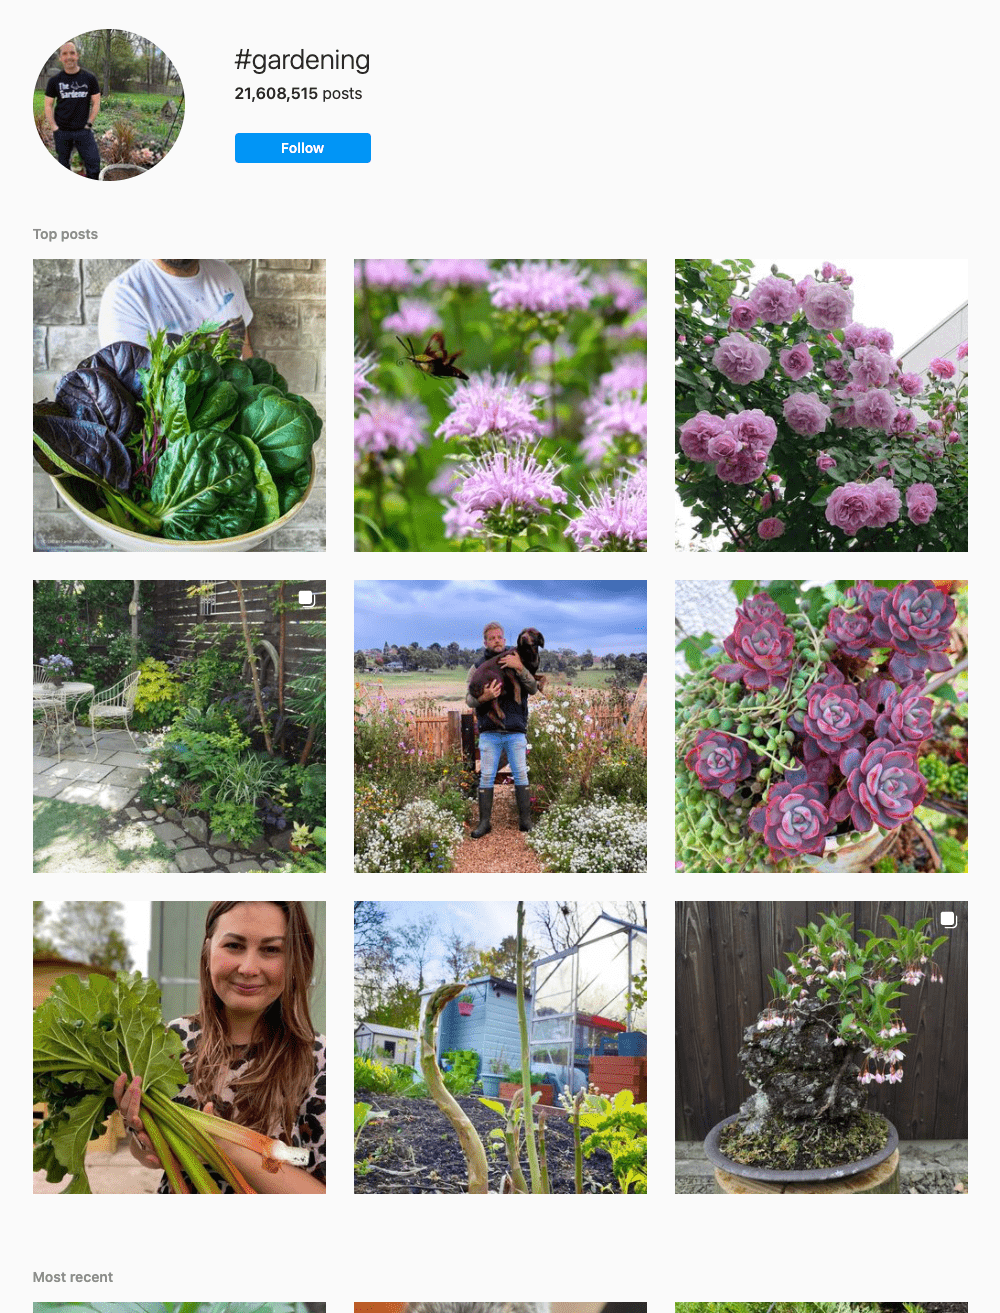 #gardening Hashtags for Instagram